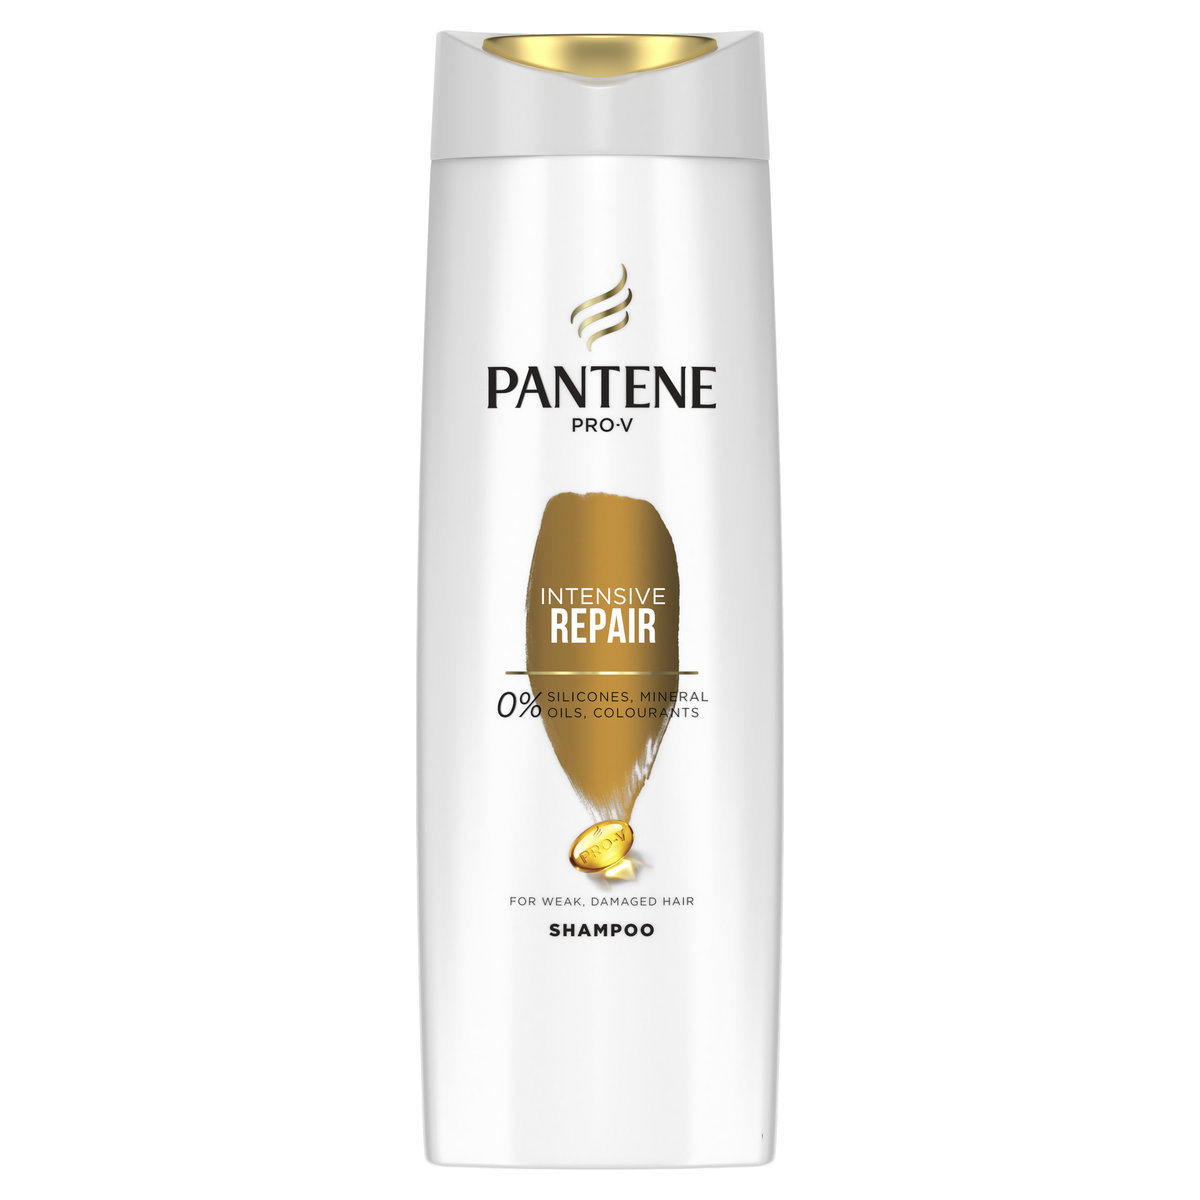 pantene pro-v 3w1 szampon przeciwłupieżowy 360 ml